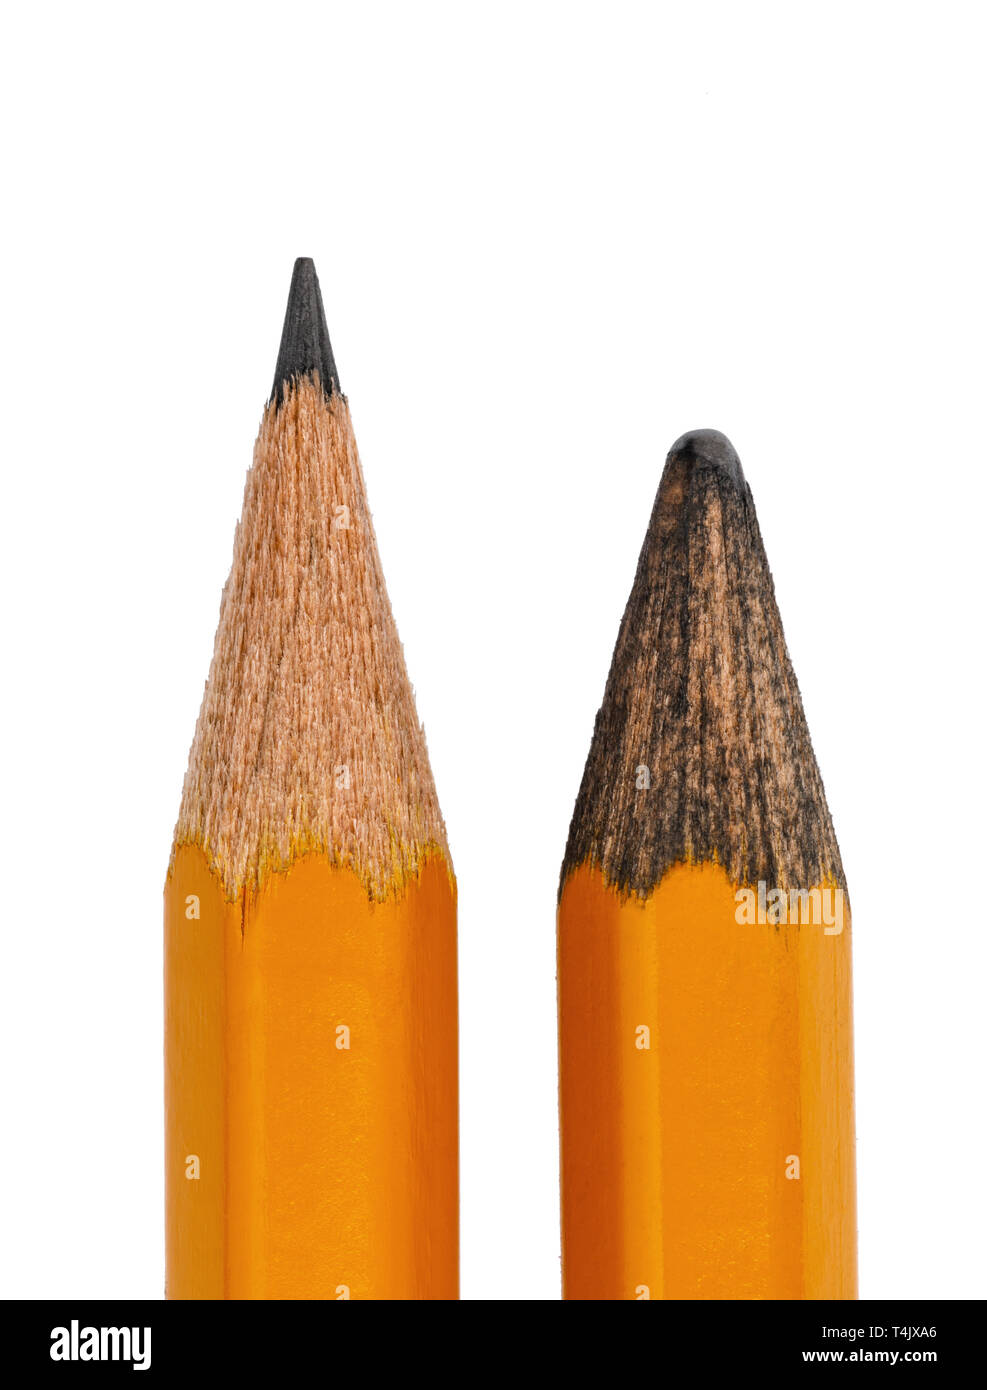 Zwei Bleistifte, eine neue, die andere ist alt, auf weißem Hintergrund  Stockfotografie - Alamy